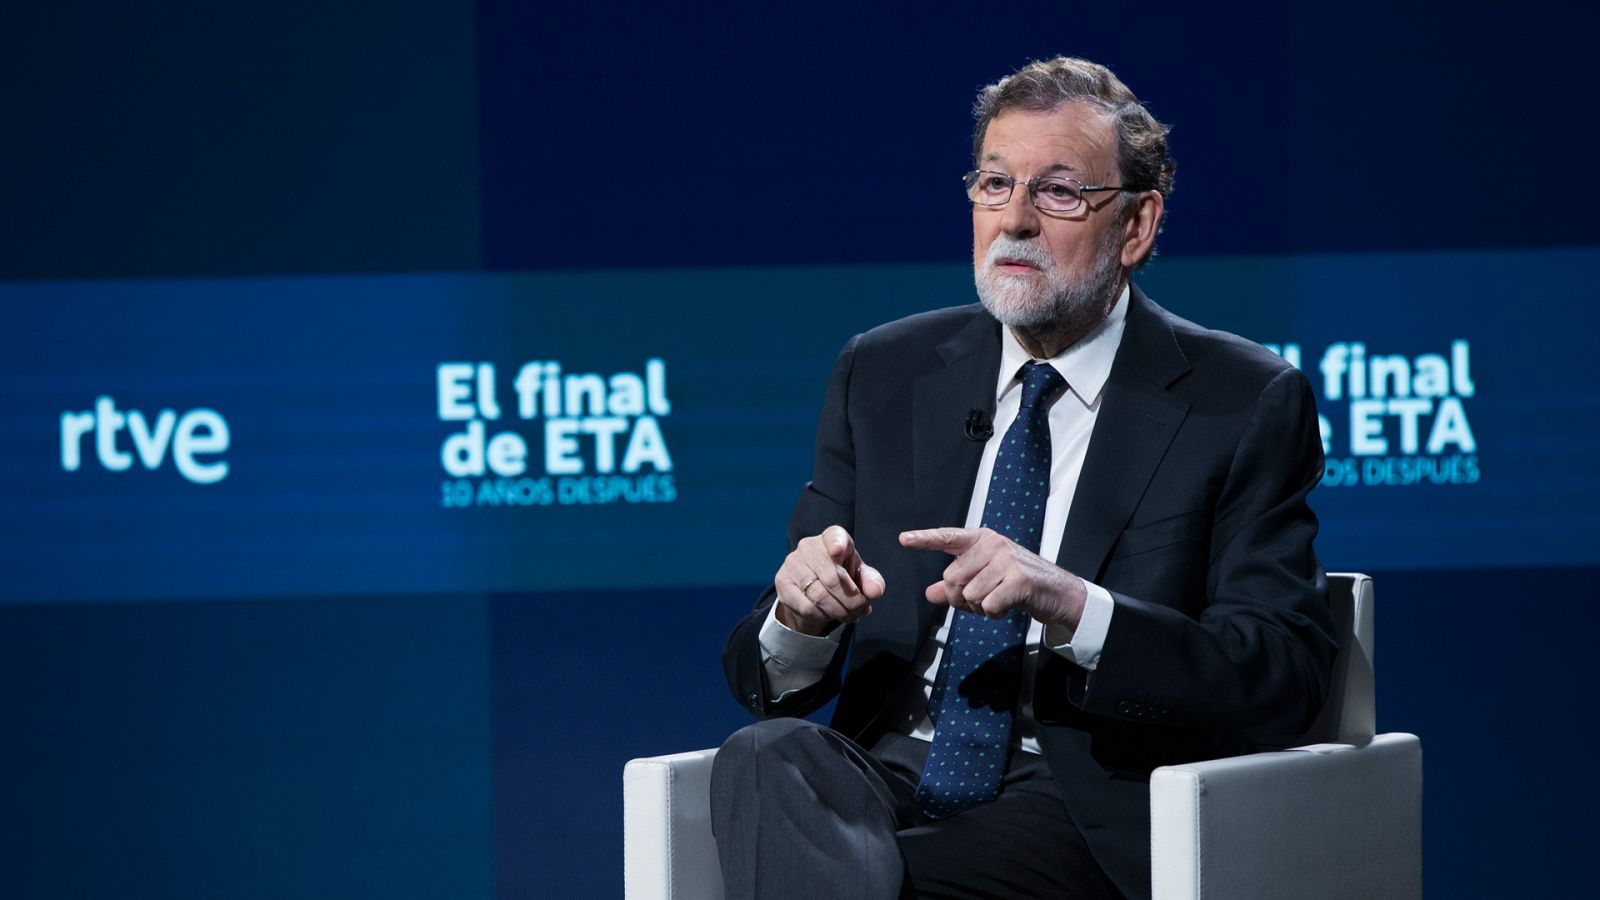 Especial informativo - El final de ETA. 10 años después. Entrevista a Mariano Rajoy - Lengua de signos